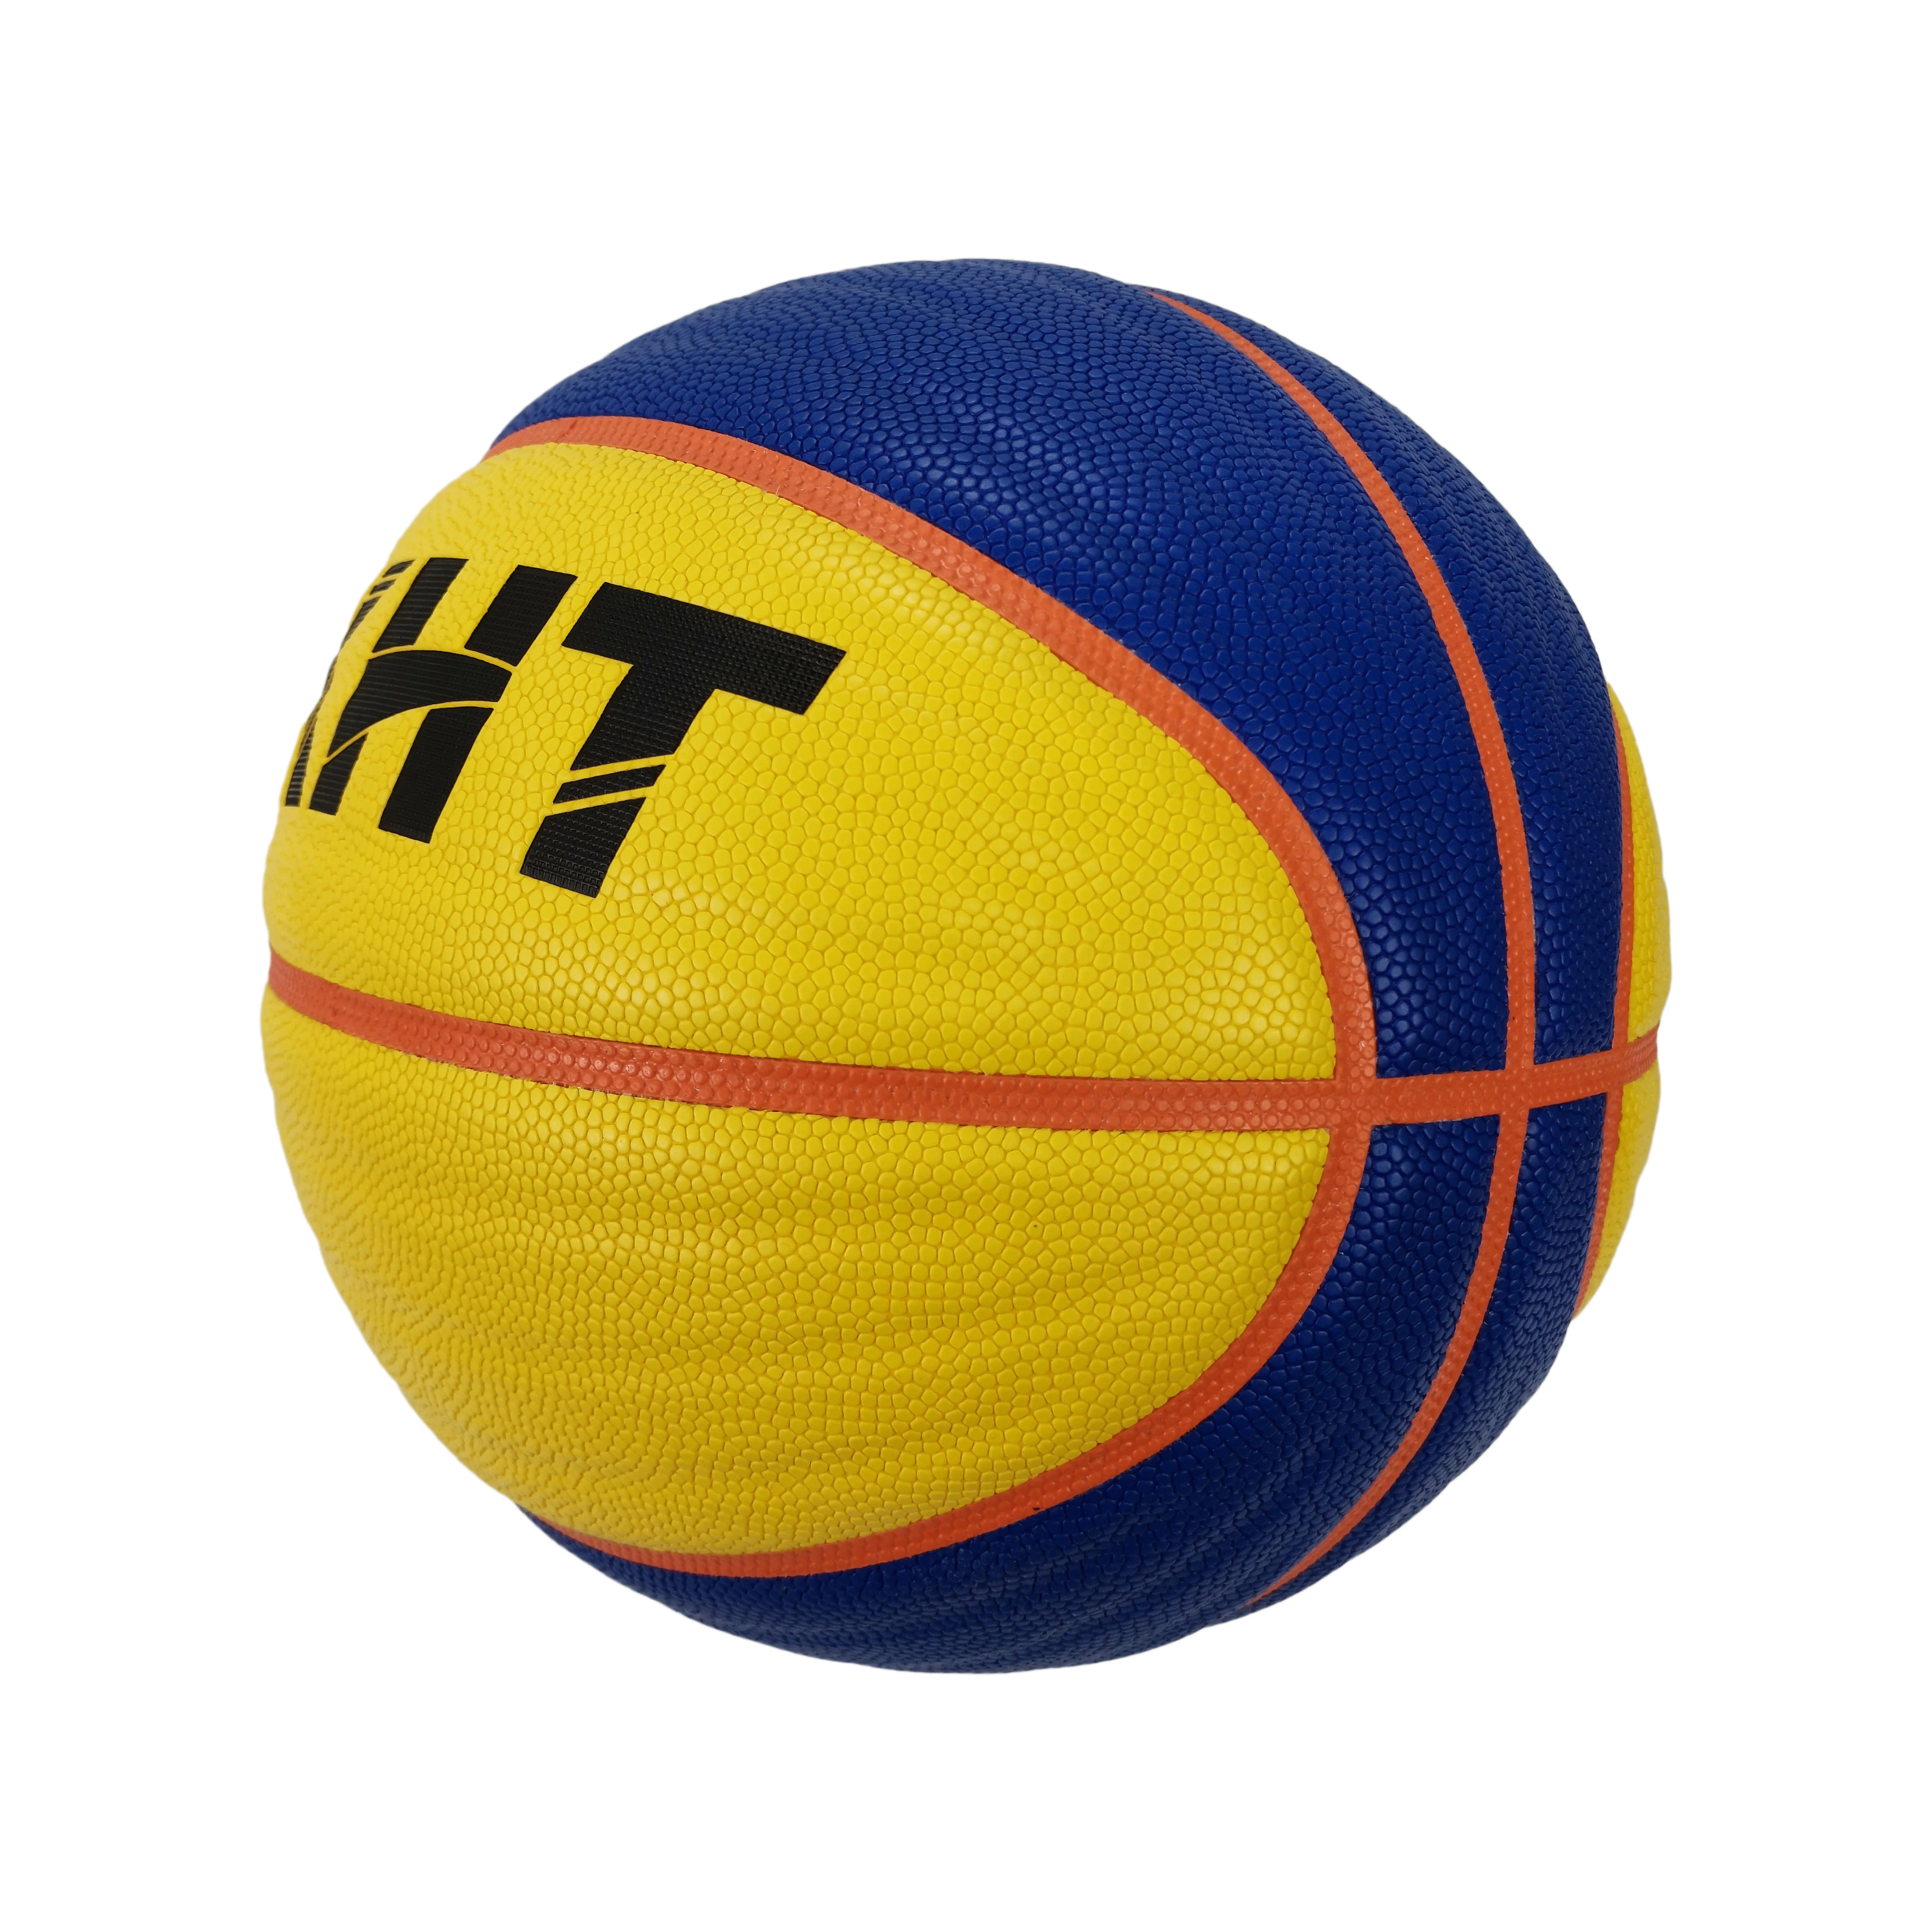 Баскетбольный мяч ФИБА. Баскетбольный мяч FIBA 3x3 Official 6. Футболка 3x3 FIBA. Насколь размером отличается мяч баскетбольный 7 и мяч ФИБА 3x3.